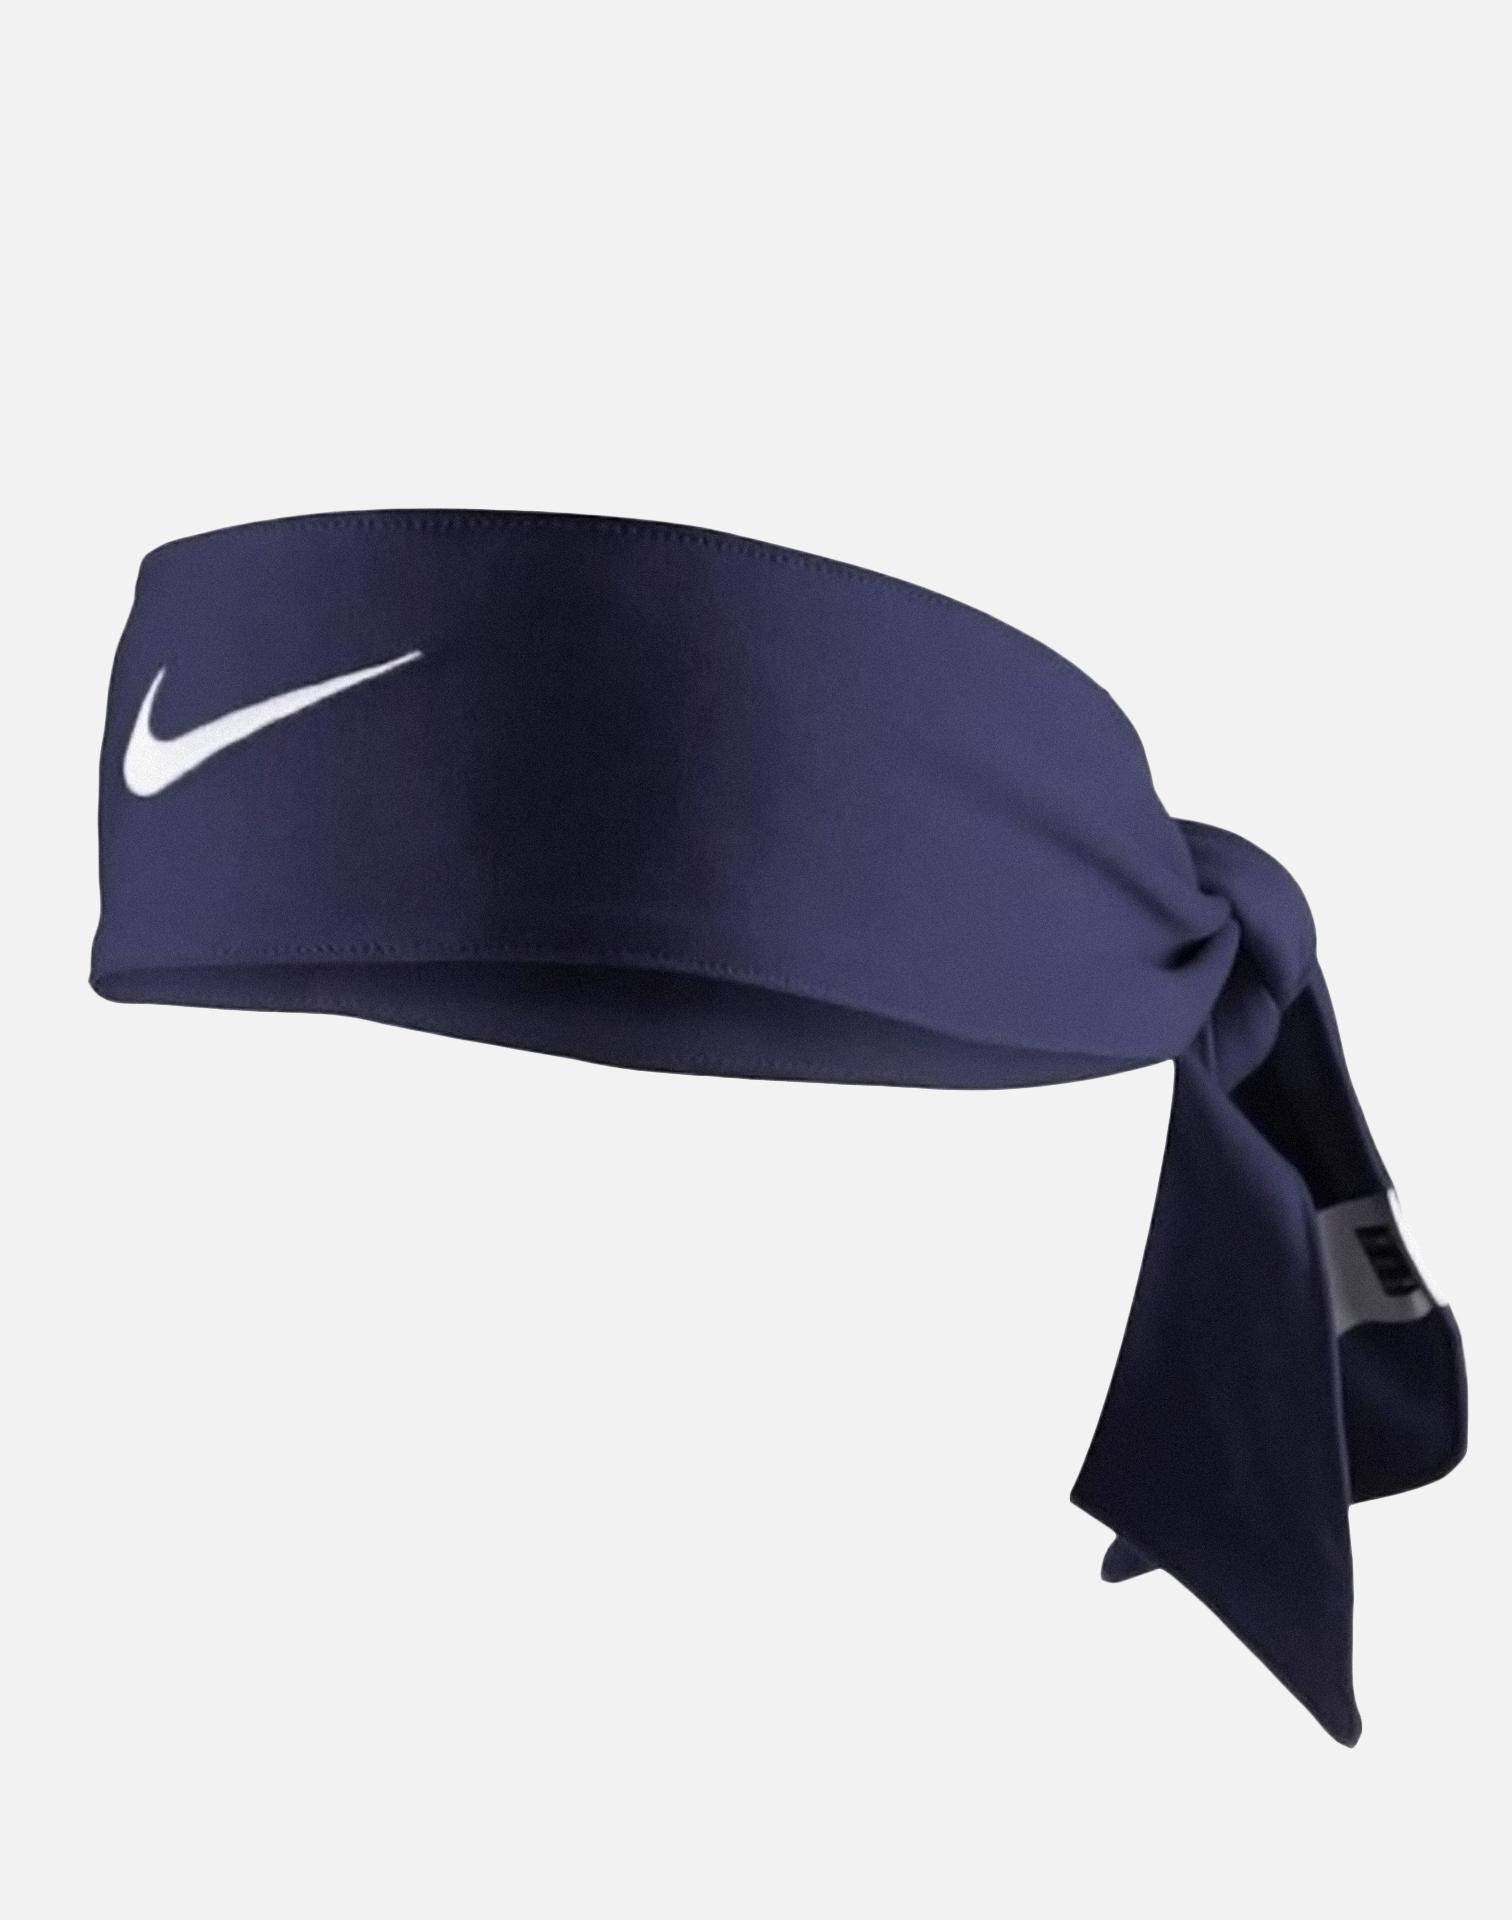 Nike Dri-fit Head Tie 2.0 in Navy (Blue) for Men - Lyst